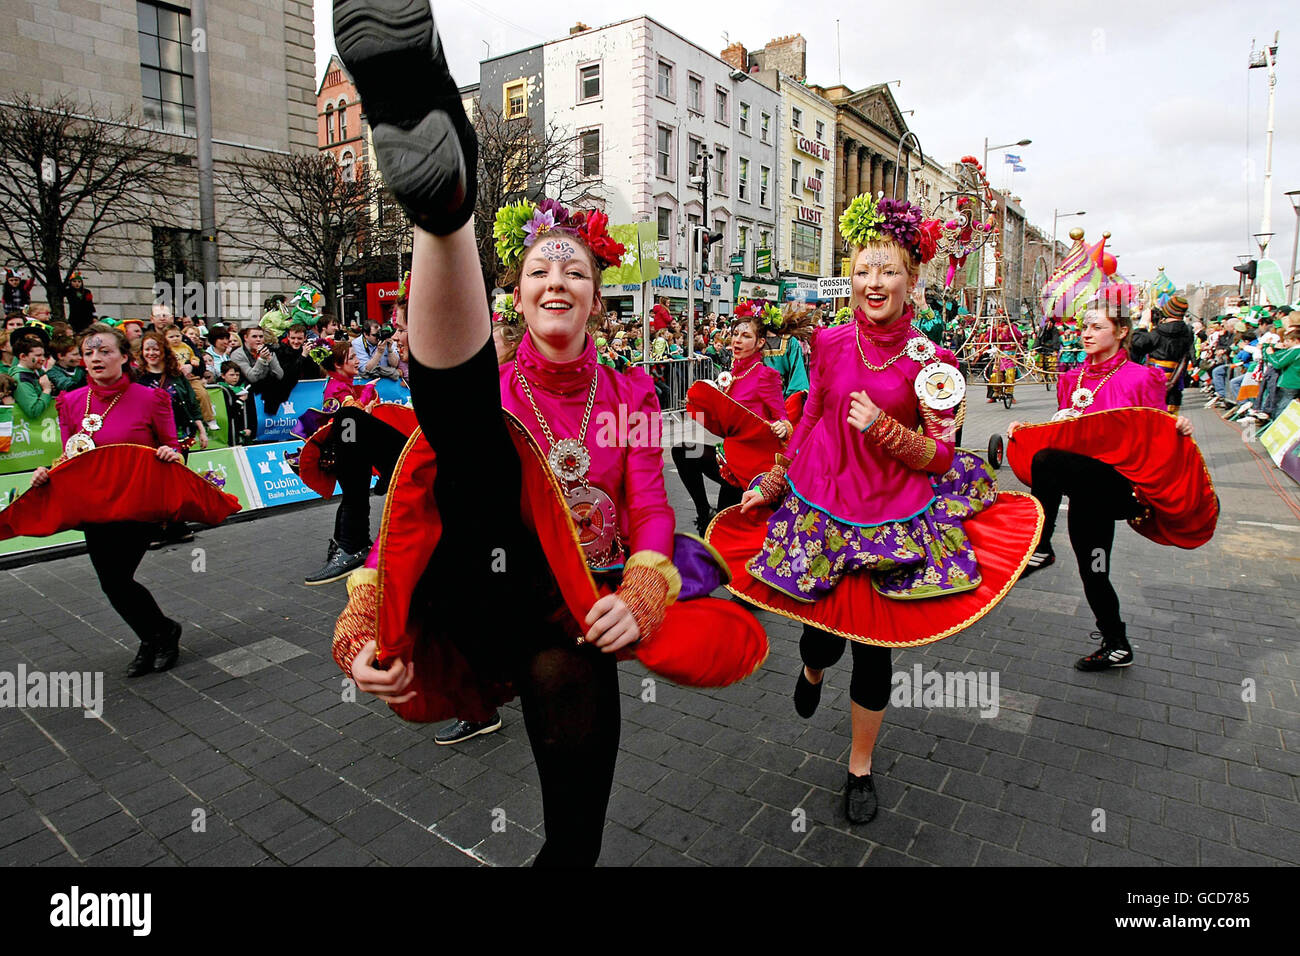 Darsteller genießen die St. Patrick's Day Parade in Dublin, Irland. Stockfoto